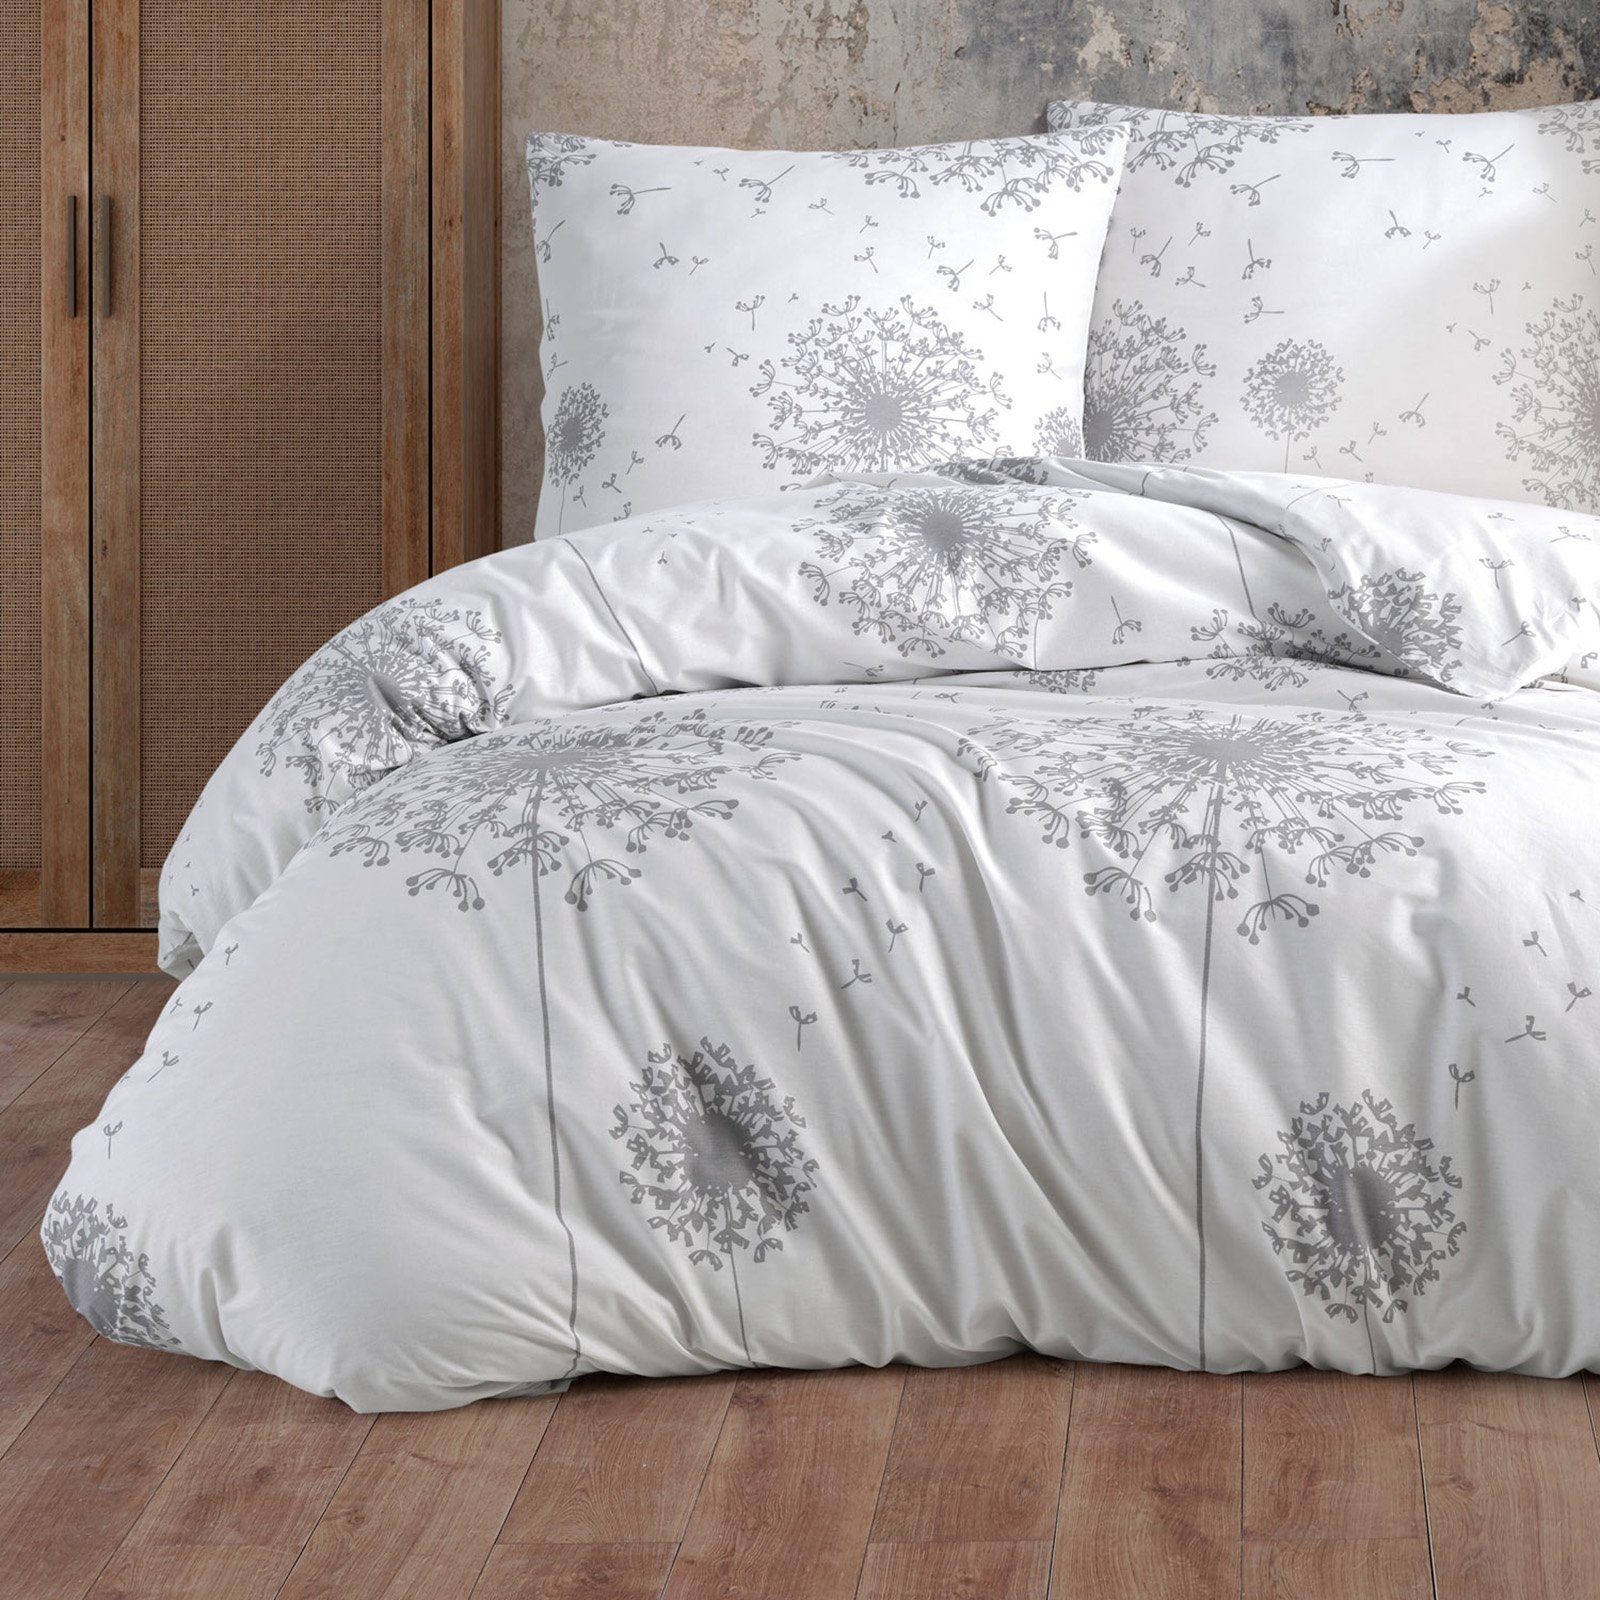 Bettwäsche, Buymax, Renforcé: 100% Baumwolle, 2 teilig, 155x220 cm, Bettbezug-Set mit Reißverschluss Blumen Blätter, Weiß Grau